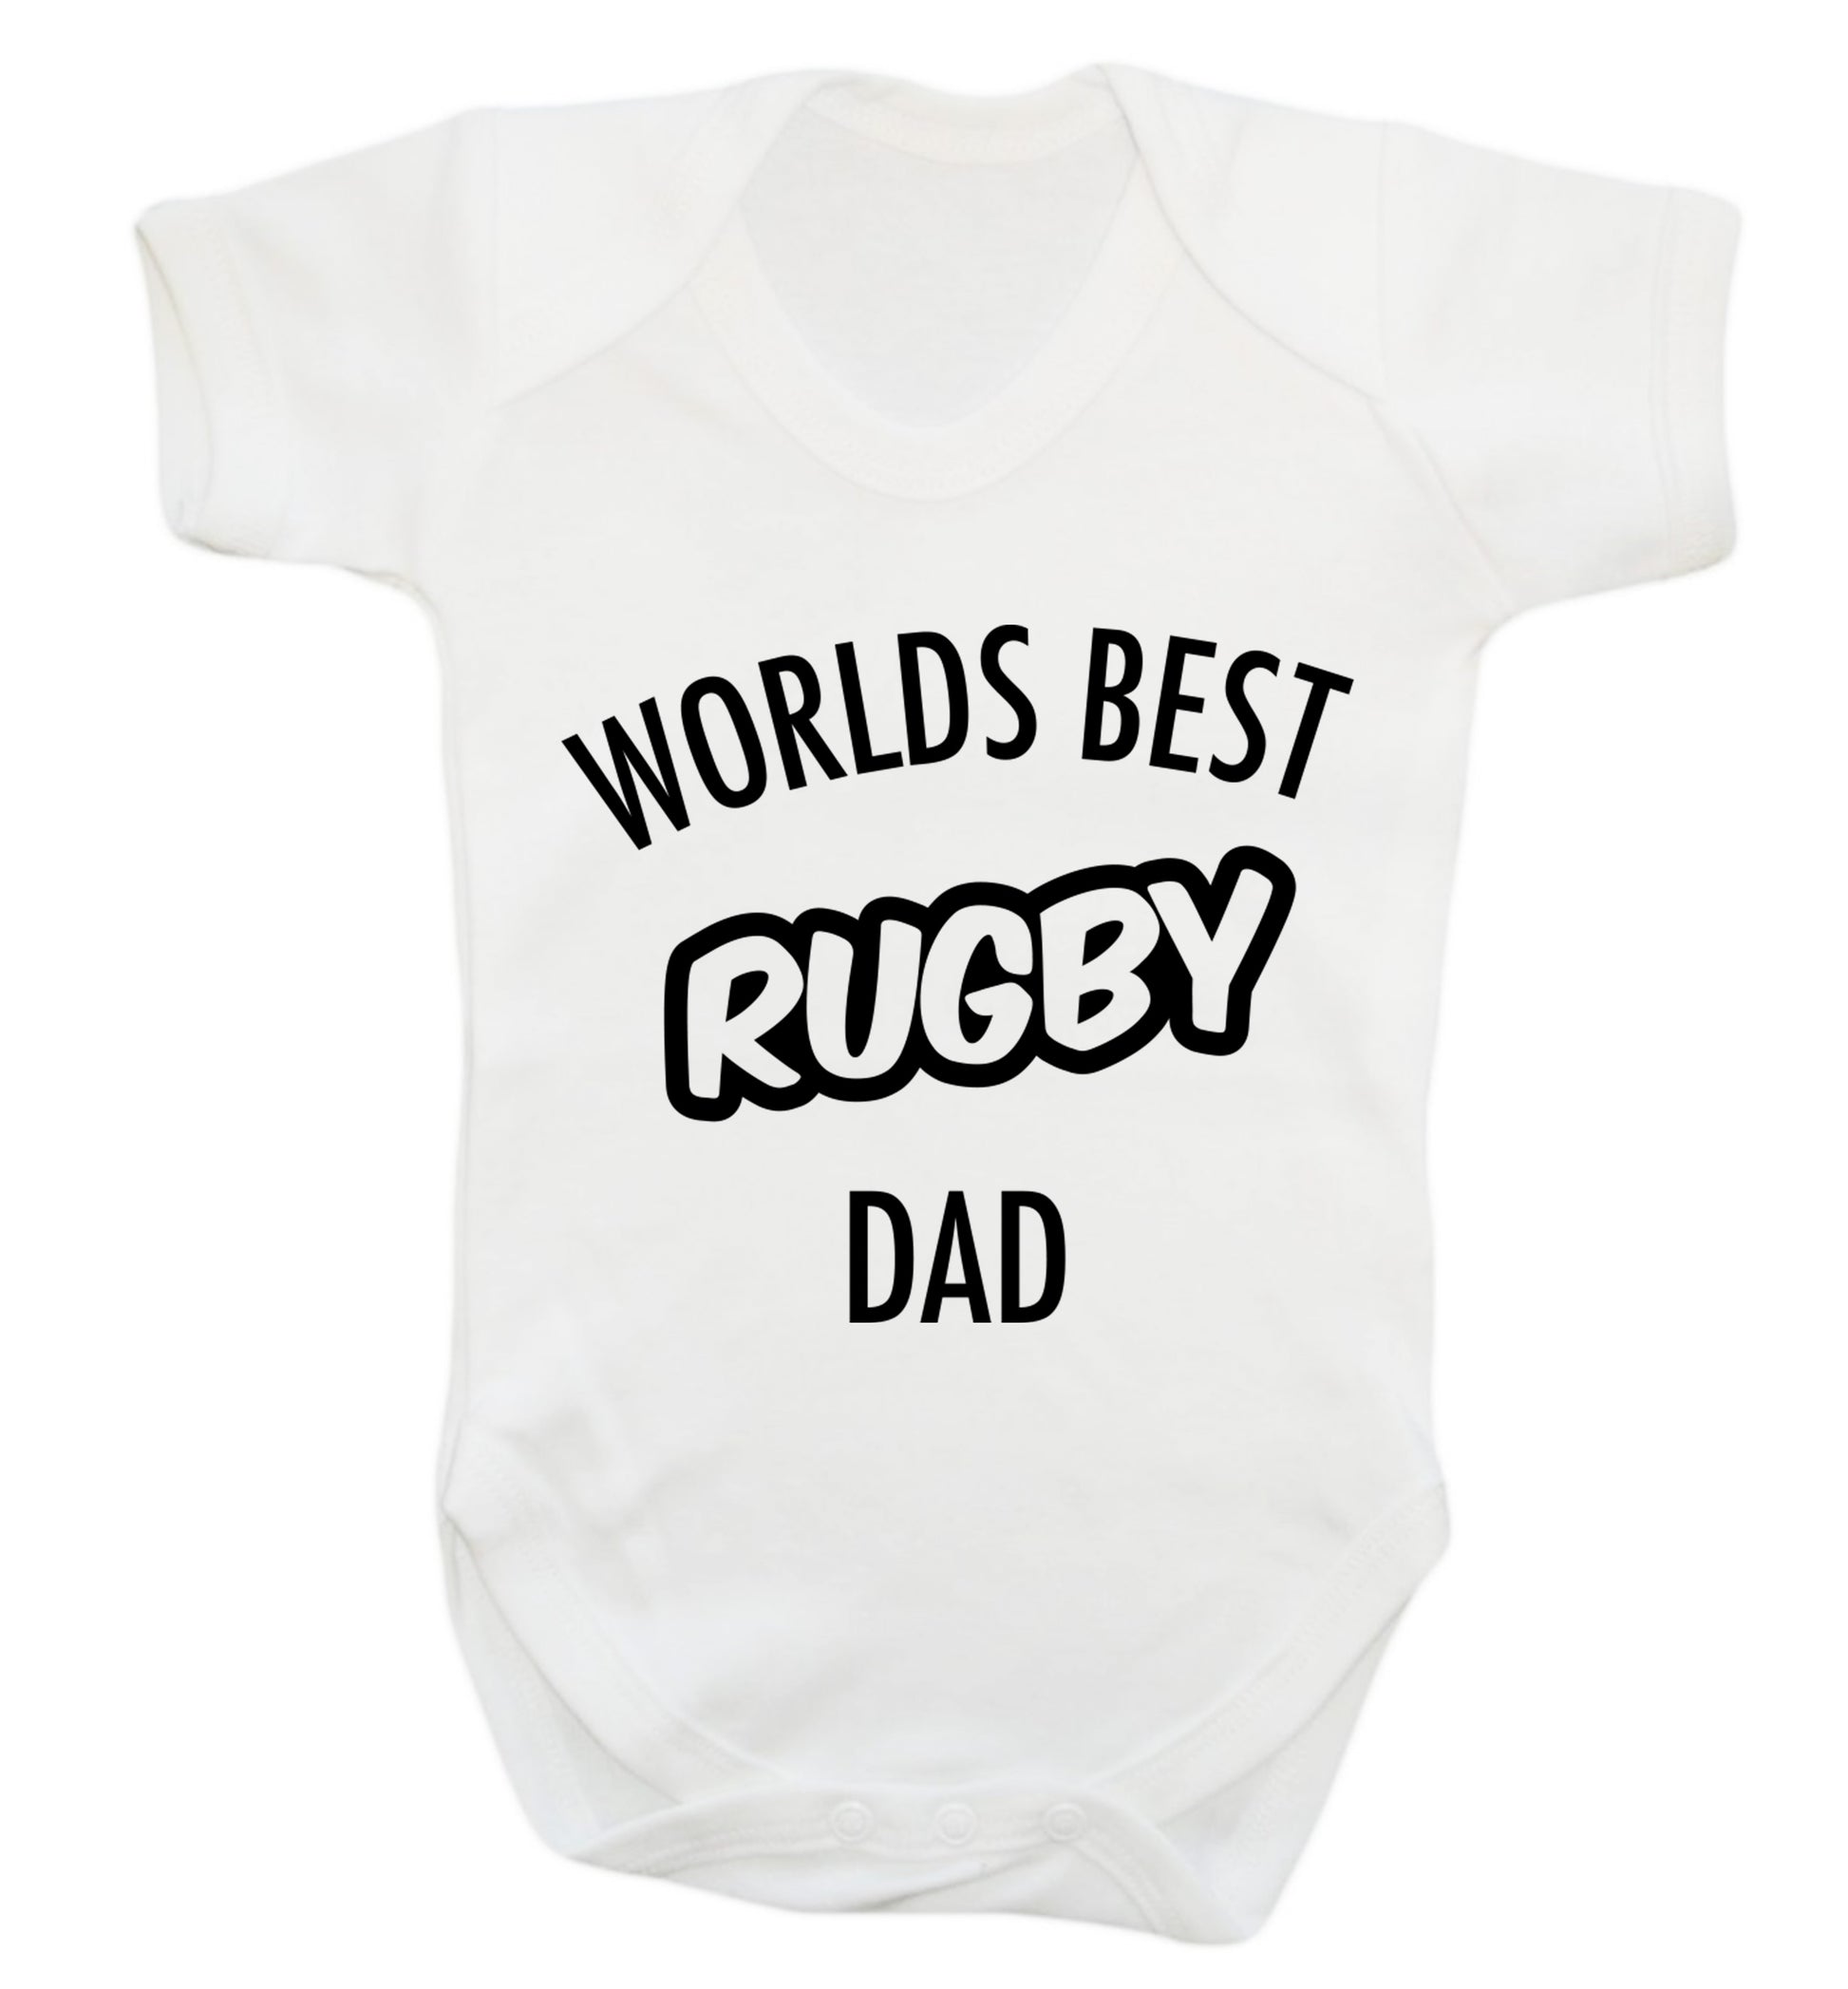 Worlds best rugby dad Baby Vest white 18-24 months